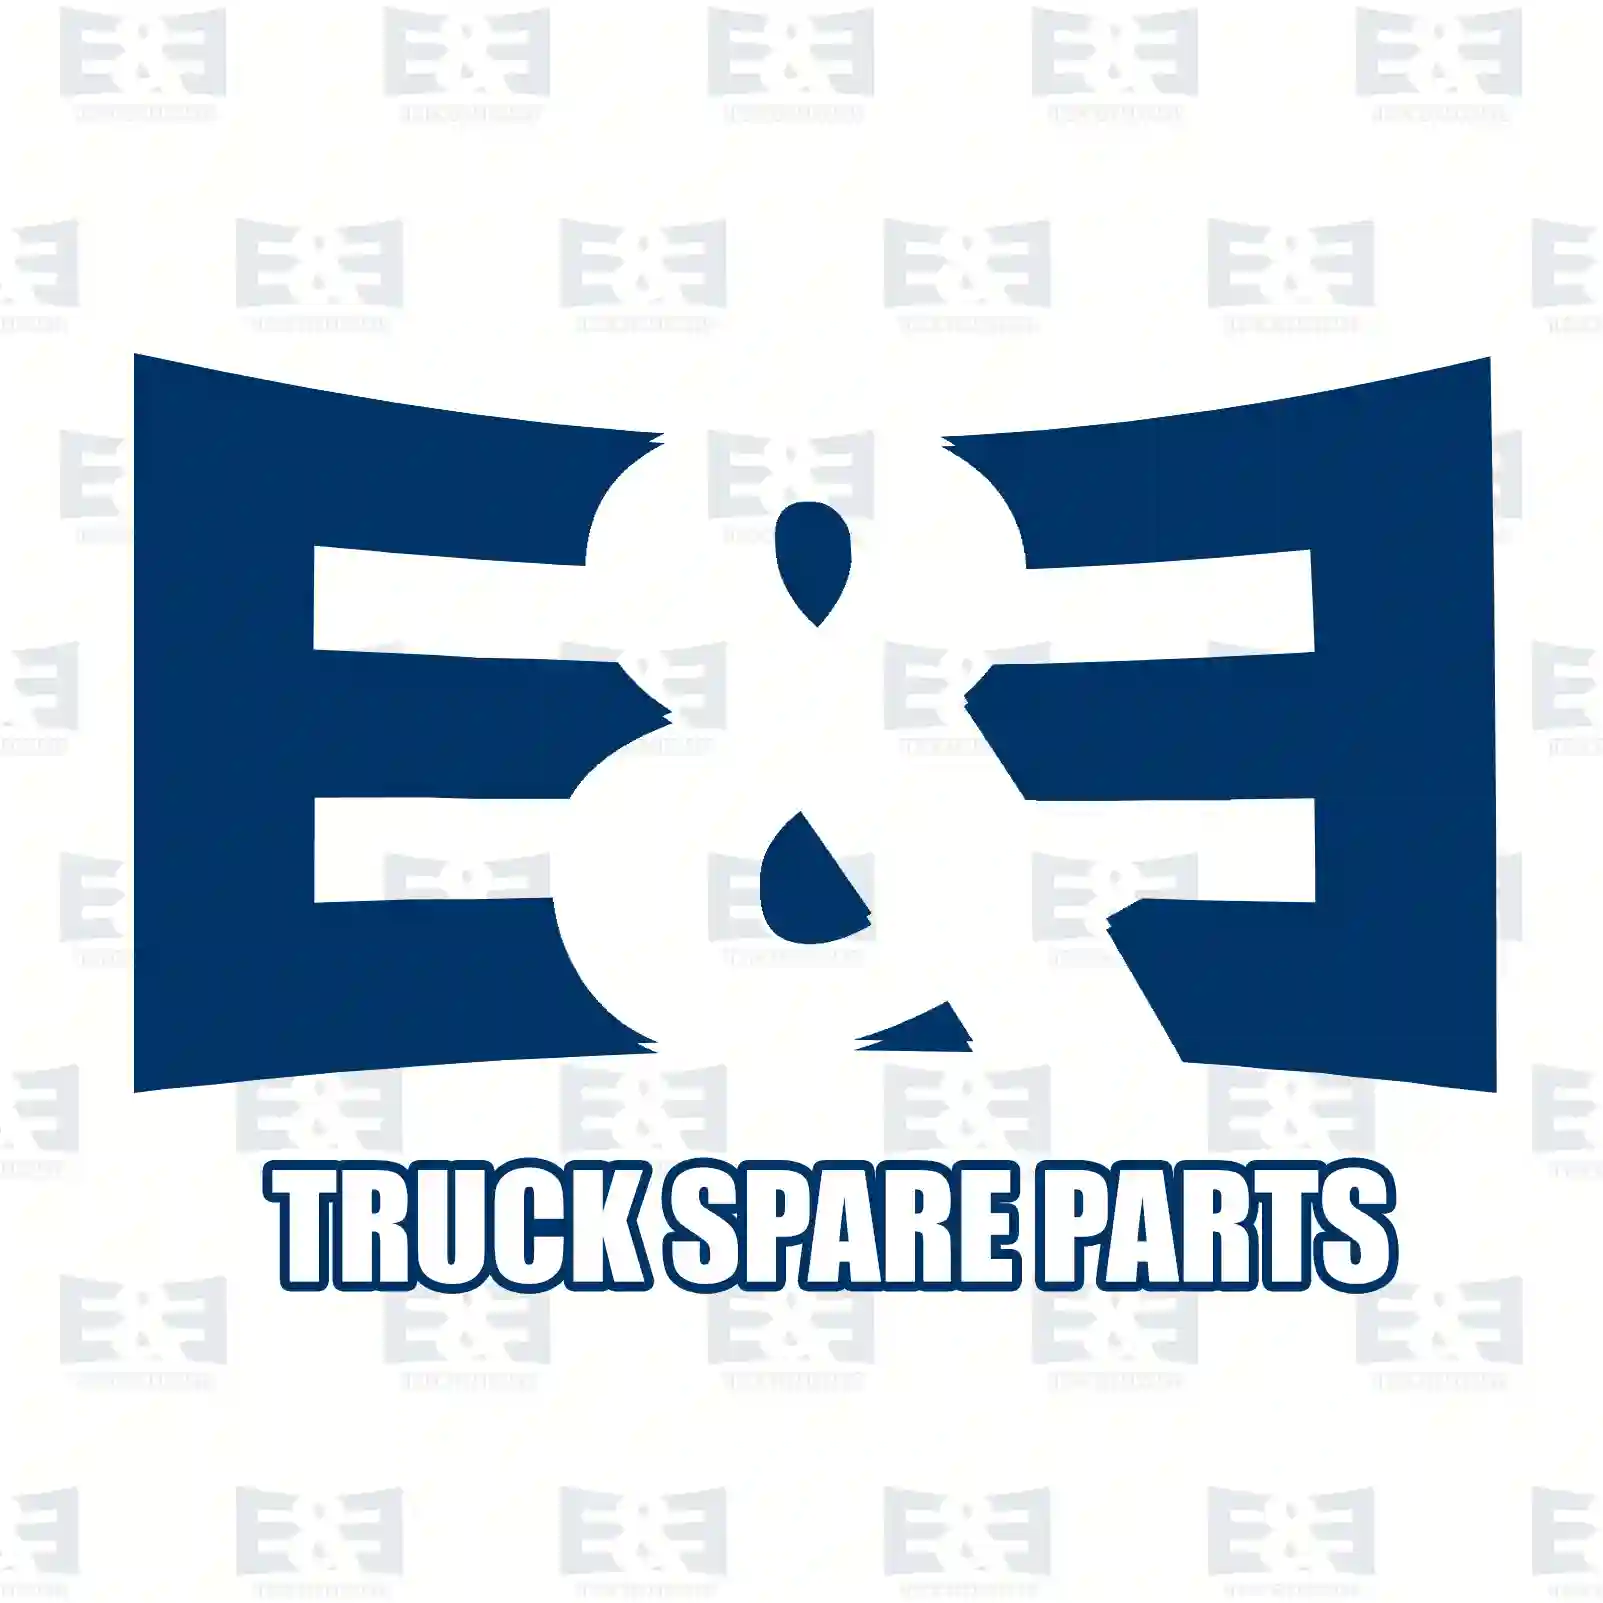 Unit injector, 2E2286095, 20544184, 85000317, 85000889, 85006317 ||  2E2286095 E&E Truck Spare Parts | Truck Spare Parts, Auotomotive Spare Parts Unit injector, 2E2286095, 20544184, 85000317, 85000889, 85006317 ||  2E2286095 E&E Truck Spare Parts | Truck Spare Parts, Auotomotive Spare Parts